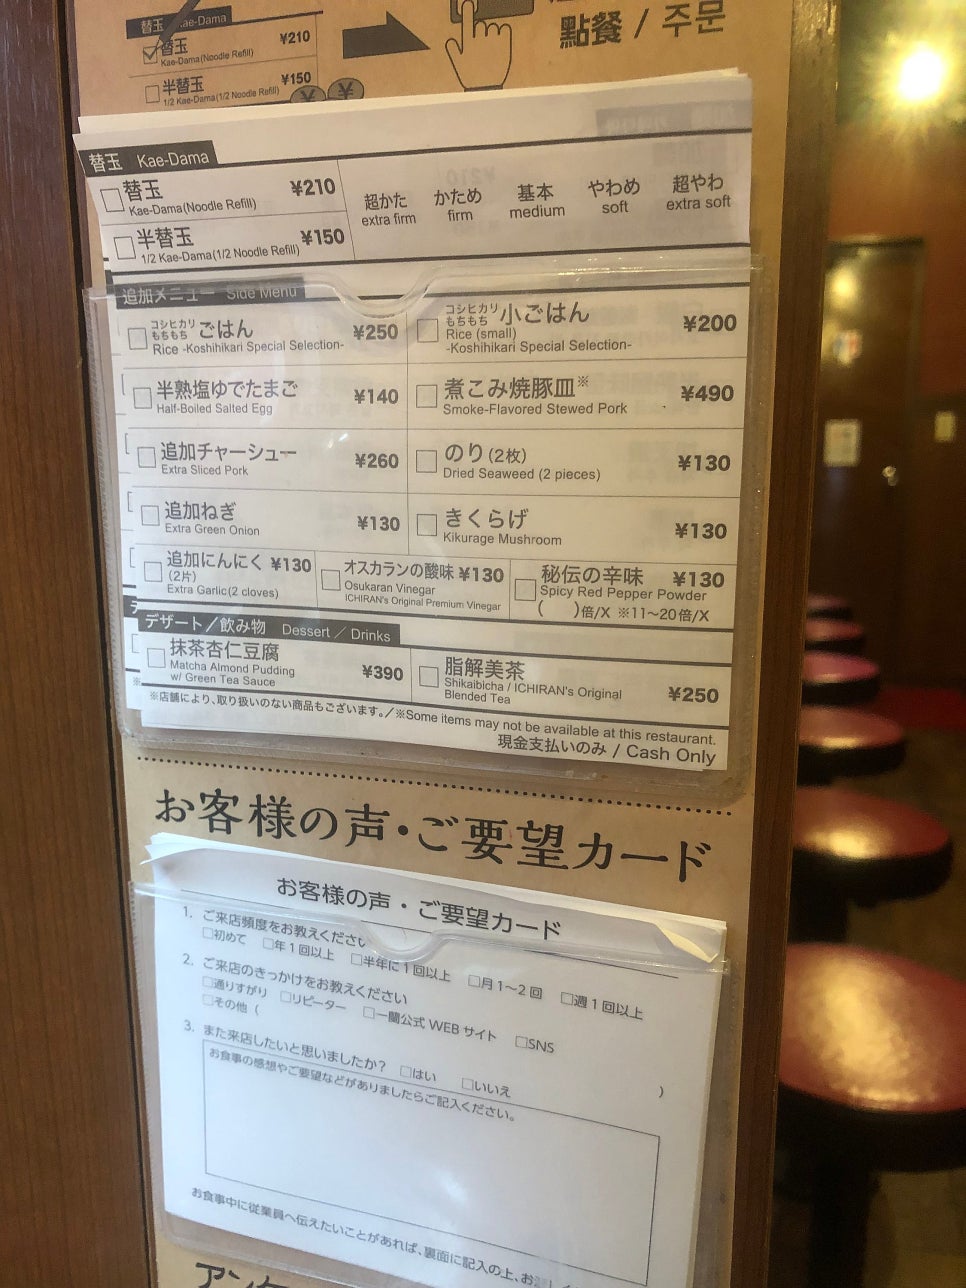 나고야 사카에 맛집 이치란 라멘 나고야사카에점 후기